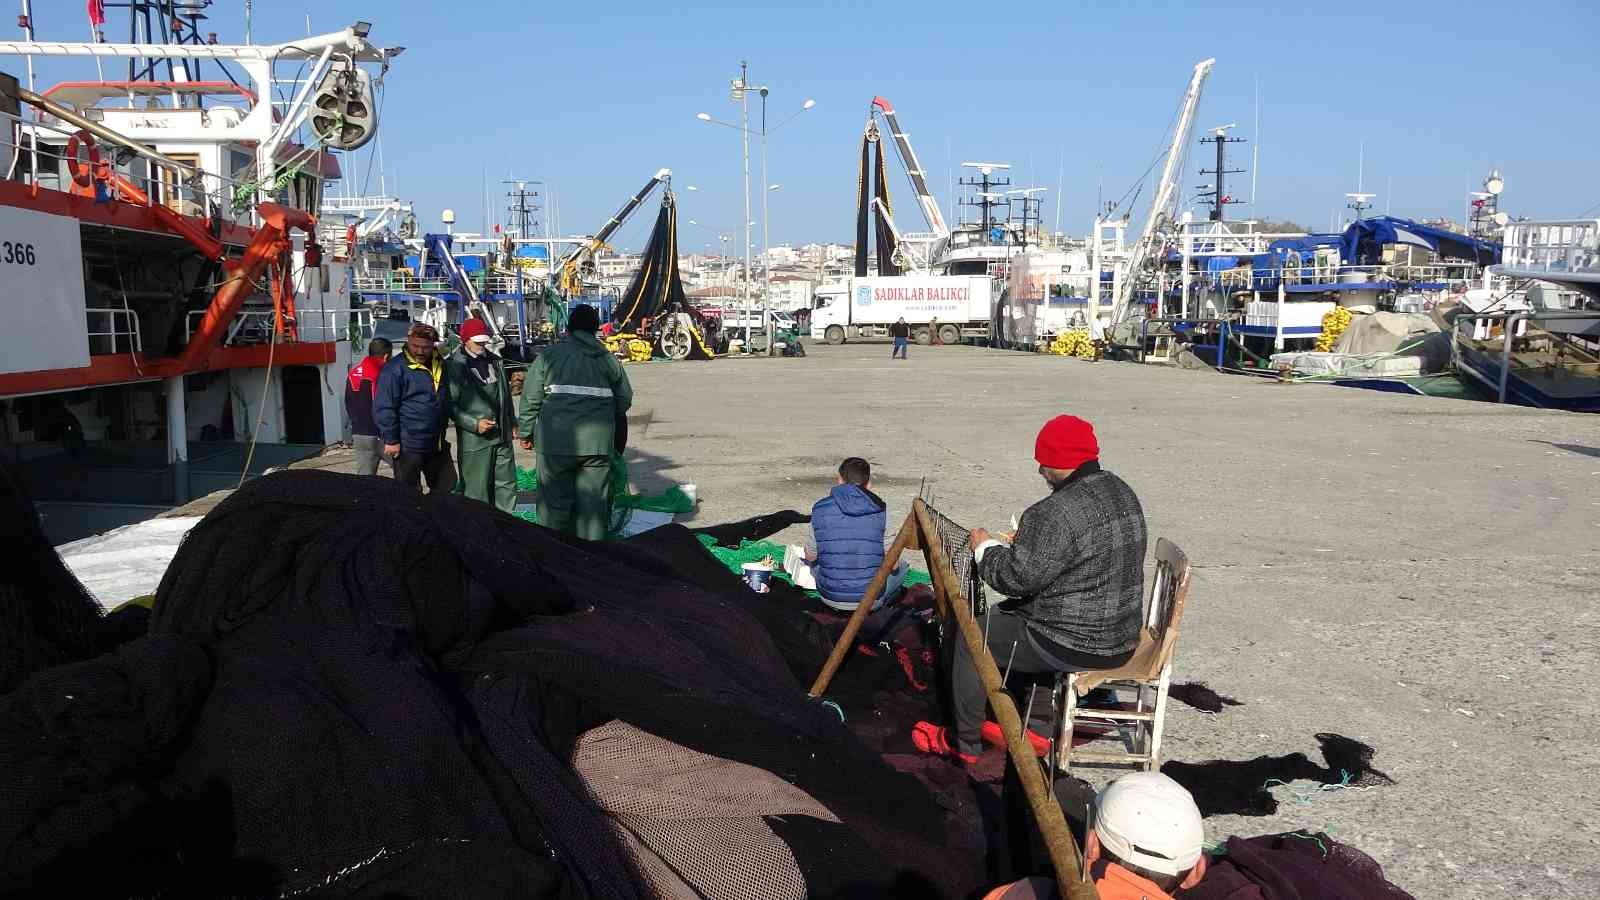 Hamsi peşindeki balıkçı tekneleri Karadeniz’e akın etti #sinop